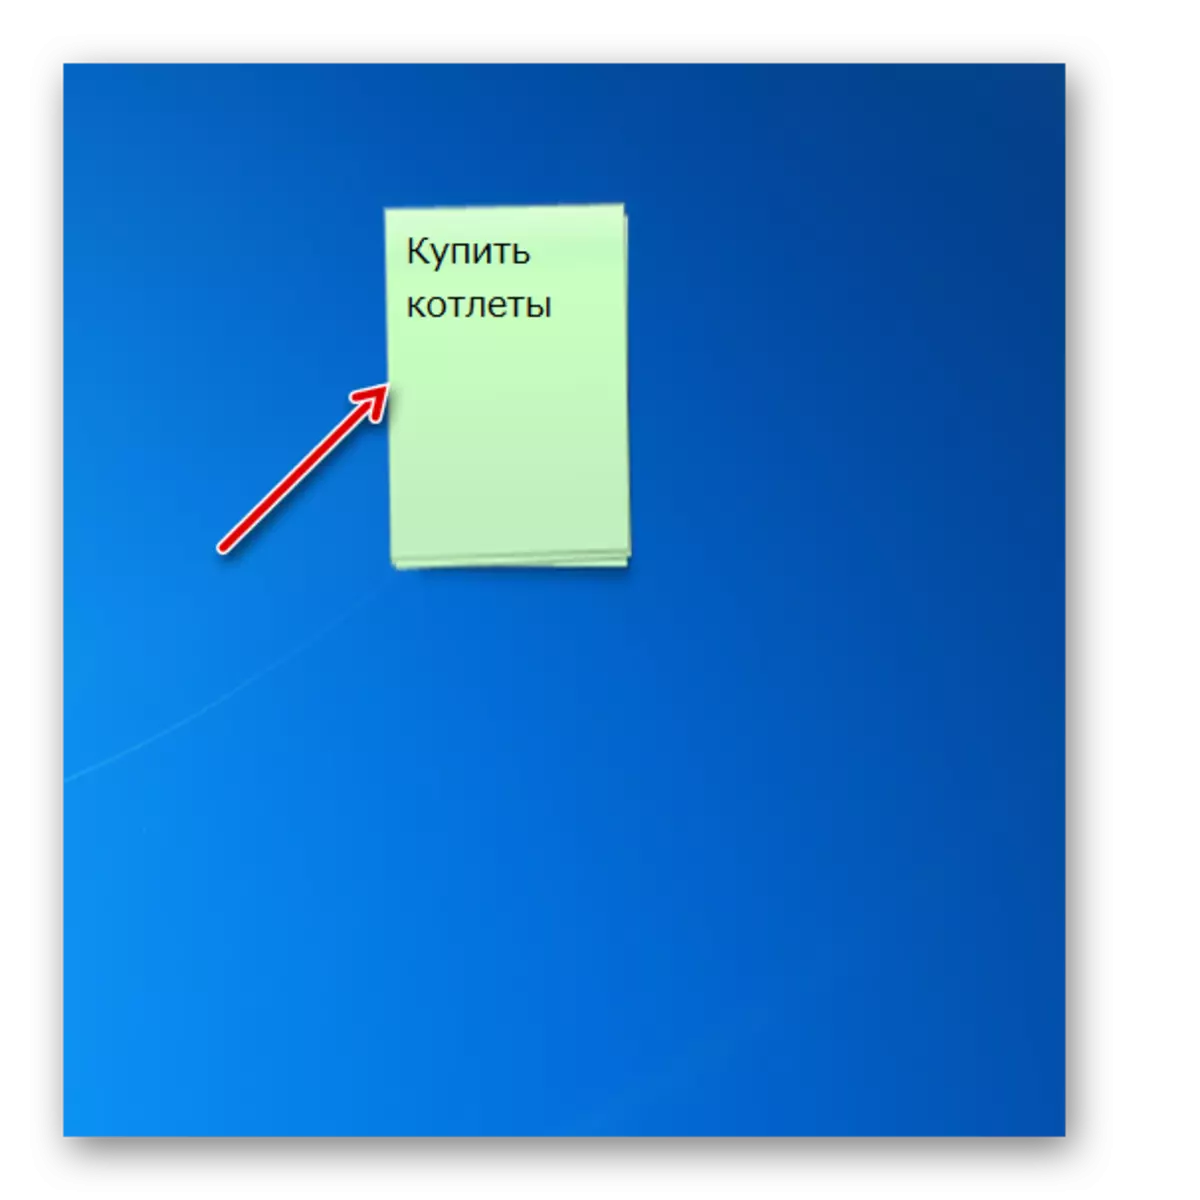 Kalite koulè koòdone ak font tèks Font aganman notescolour avek stickers son sou Desktop chanje nan Windows 7